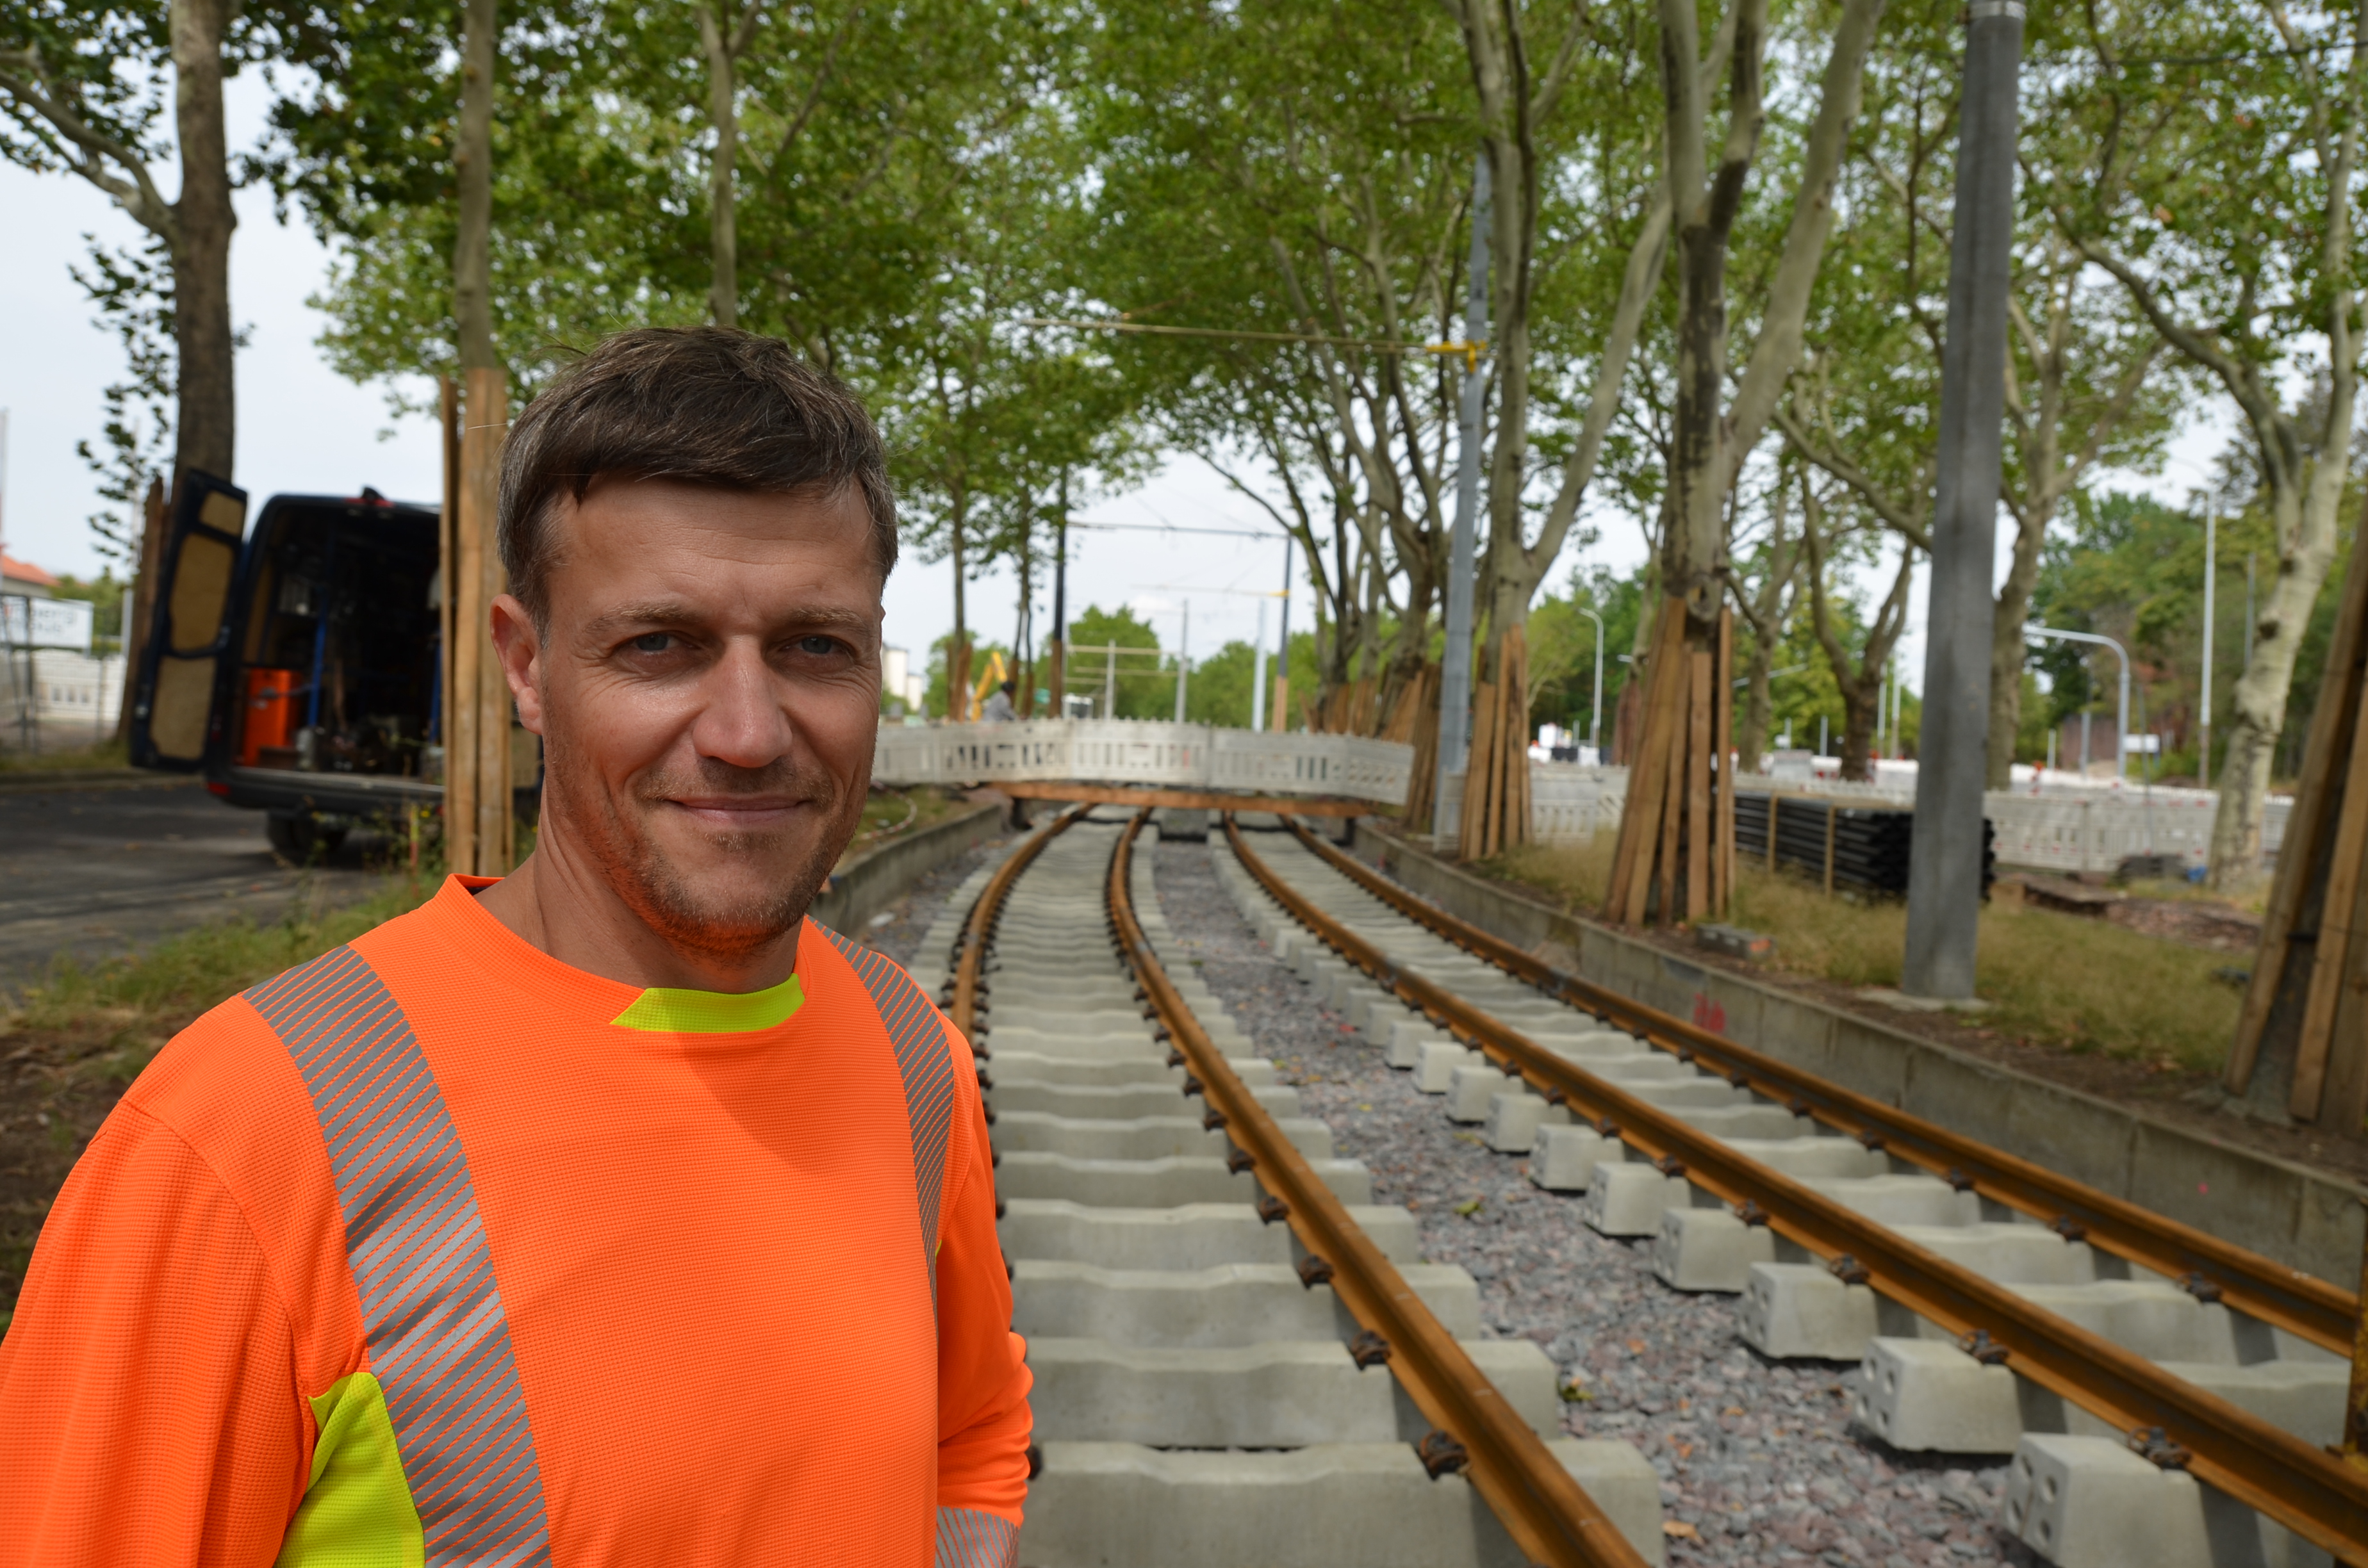 Dieses Bild ist ein Porträt des Bauoberleiters, Jörg Linke, der auf den neu verlegten Straßenbahnschienen steht.